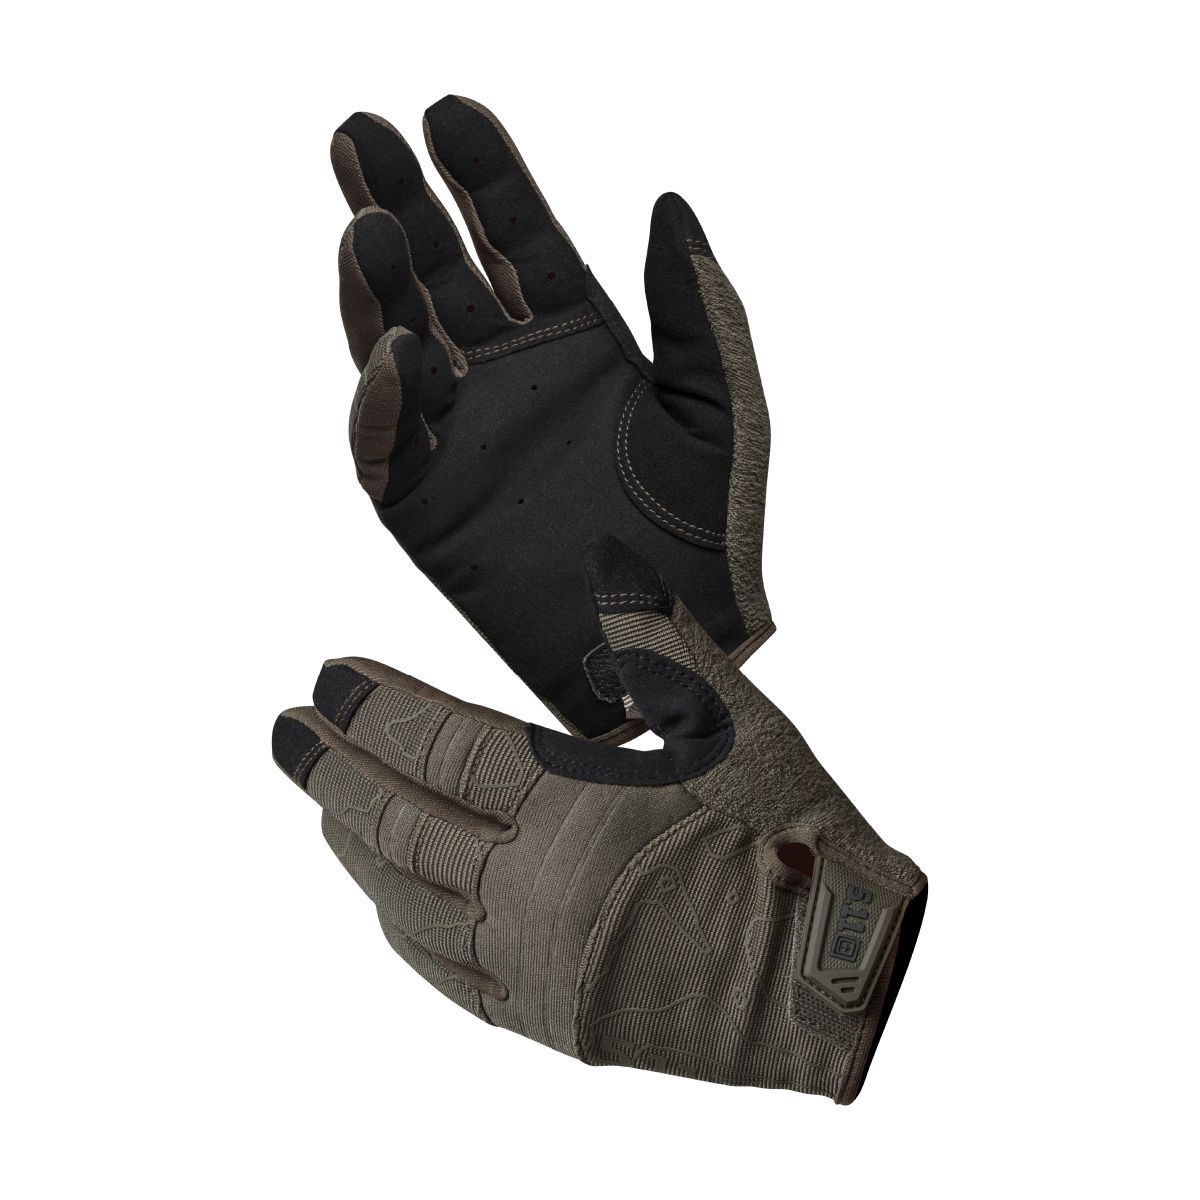 Тактические перчатки 5.11 Tactical competition shooting 2.0. Цвет Ranger green 4